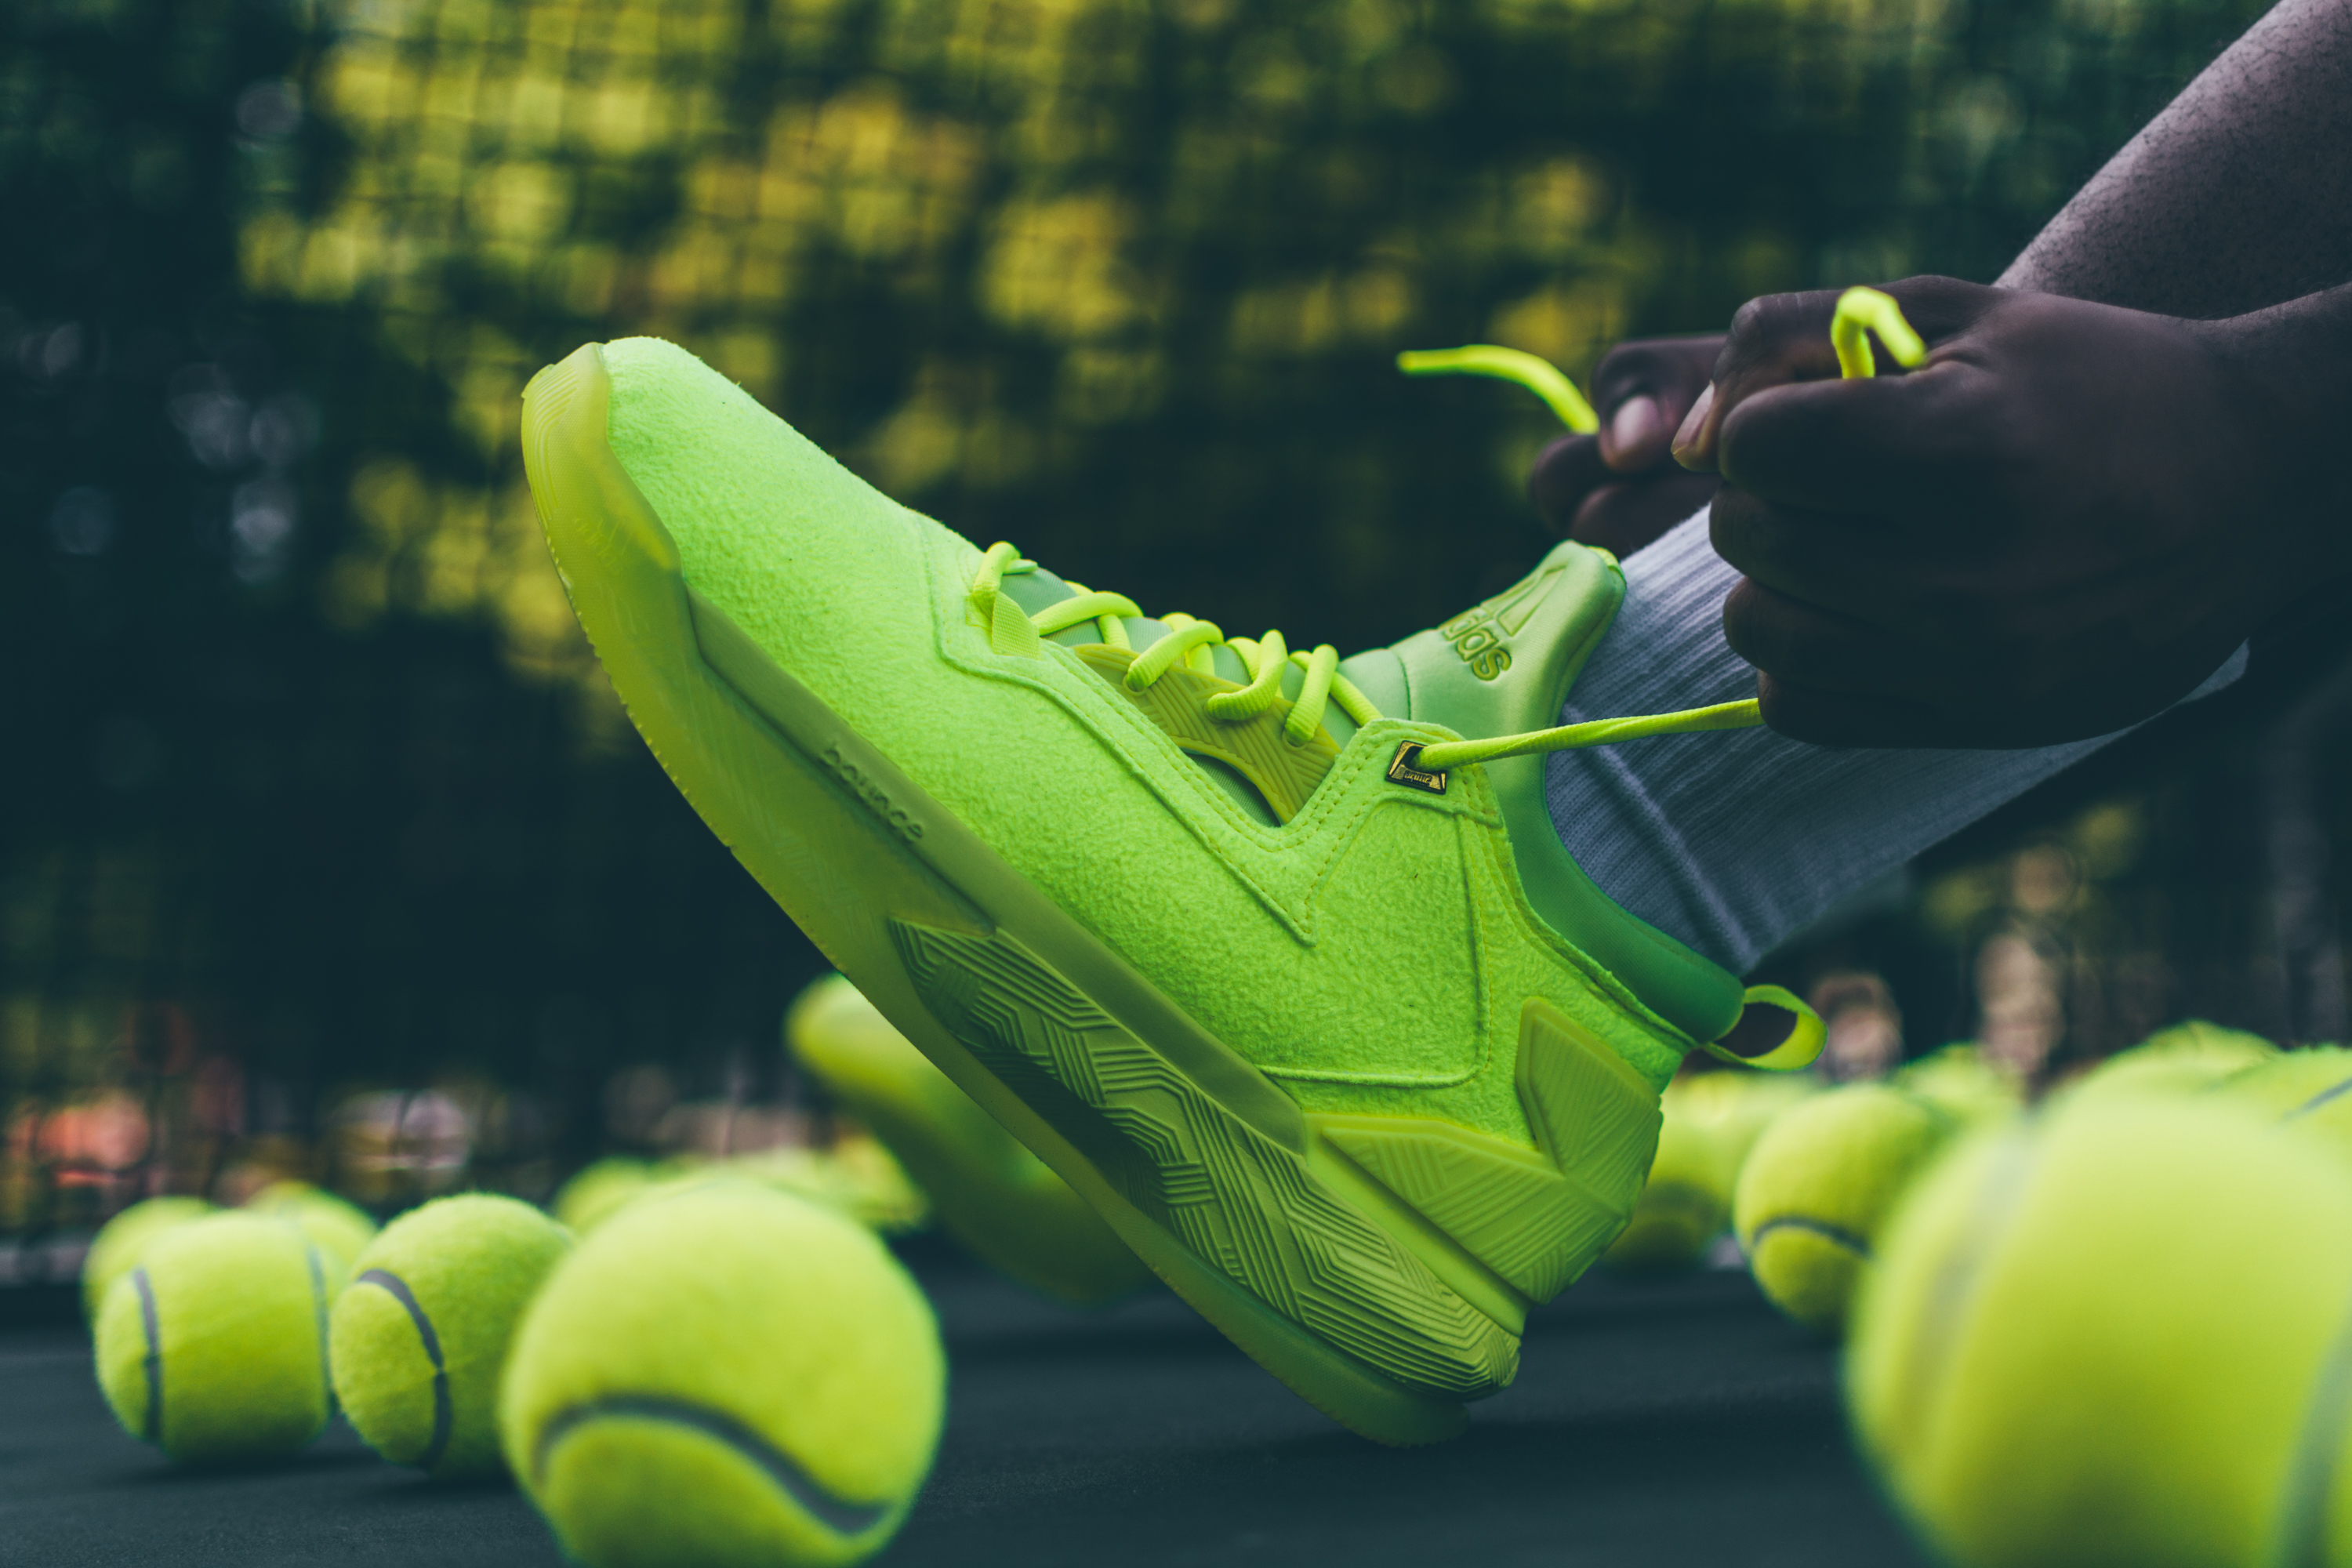 Adidas D Lillard 2 Tennis Ball | Sole Collector